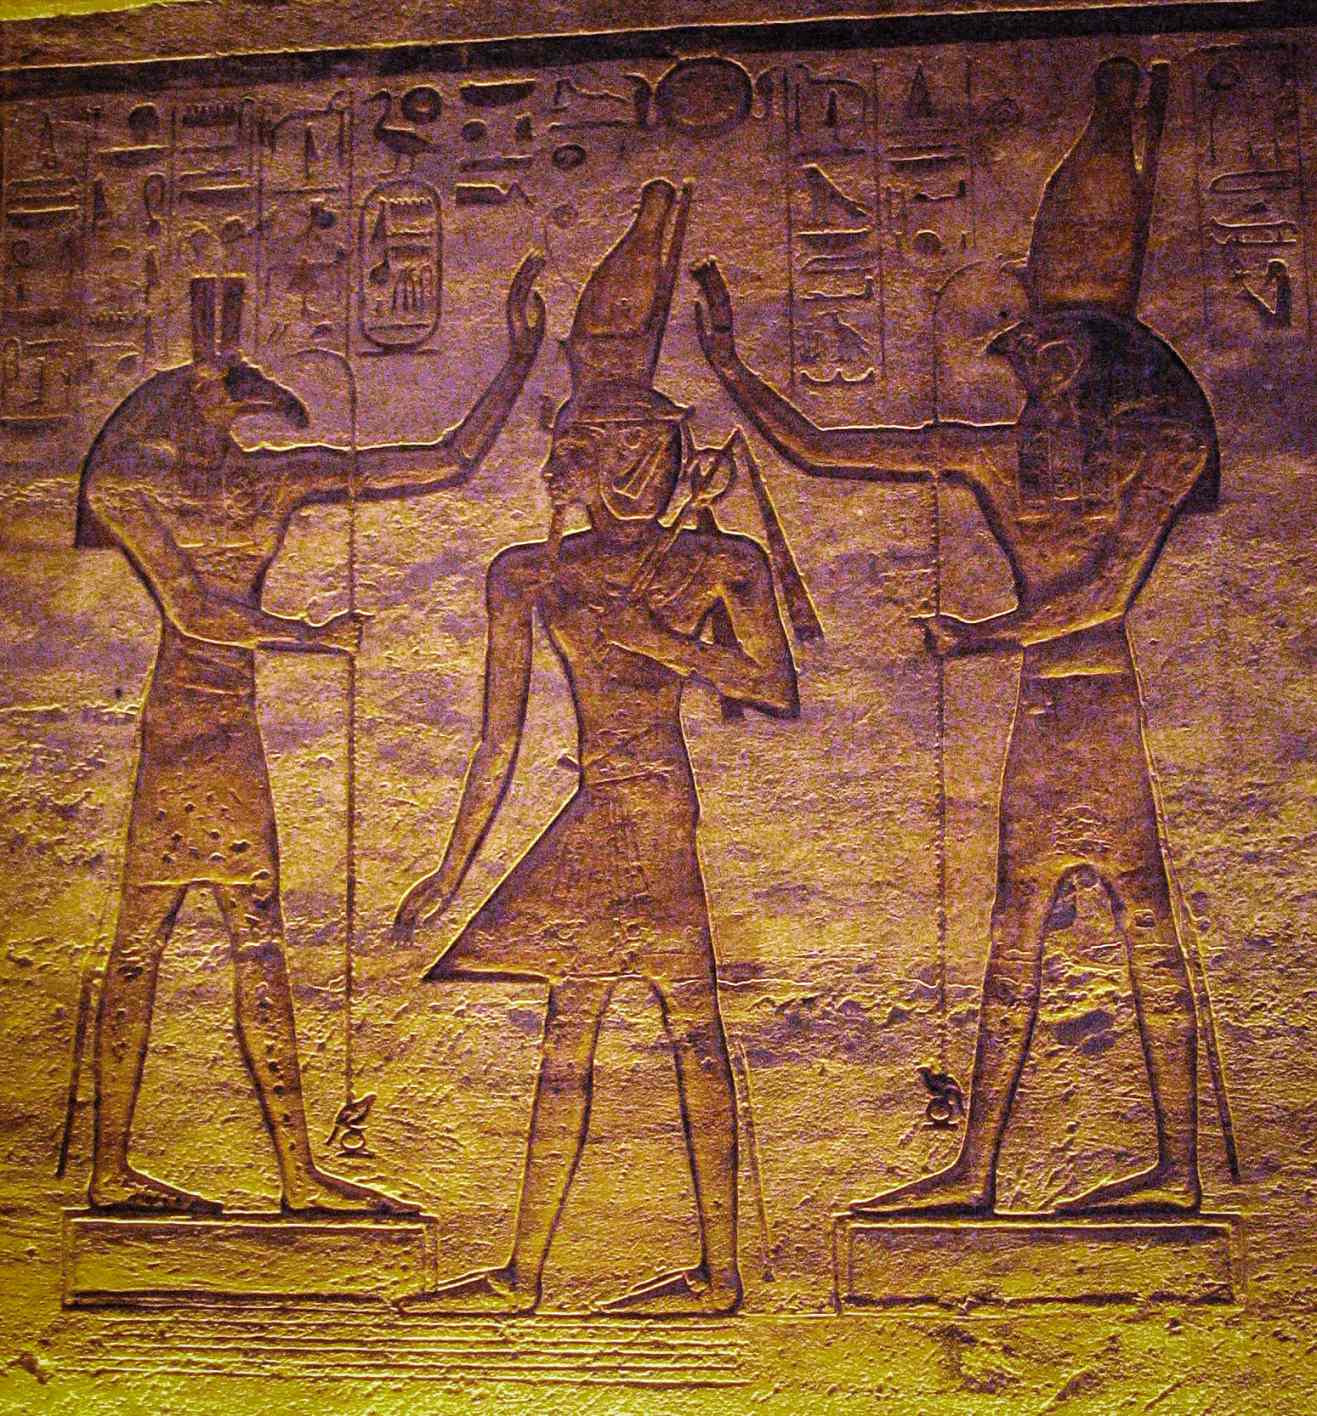 Set (Seth) i Horus obožavaju Ramzesa. Trenutna studija pokazuje da je mjesec mogao biti predstavljen Setom, a promjenjiva zvijezda Algol Horusom u Kairskom kalendaru.